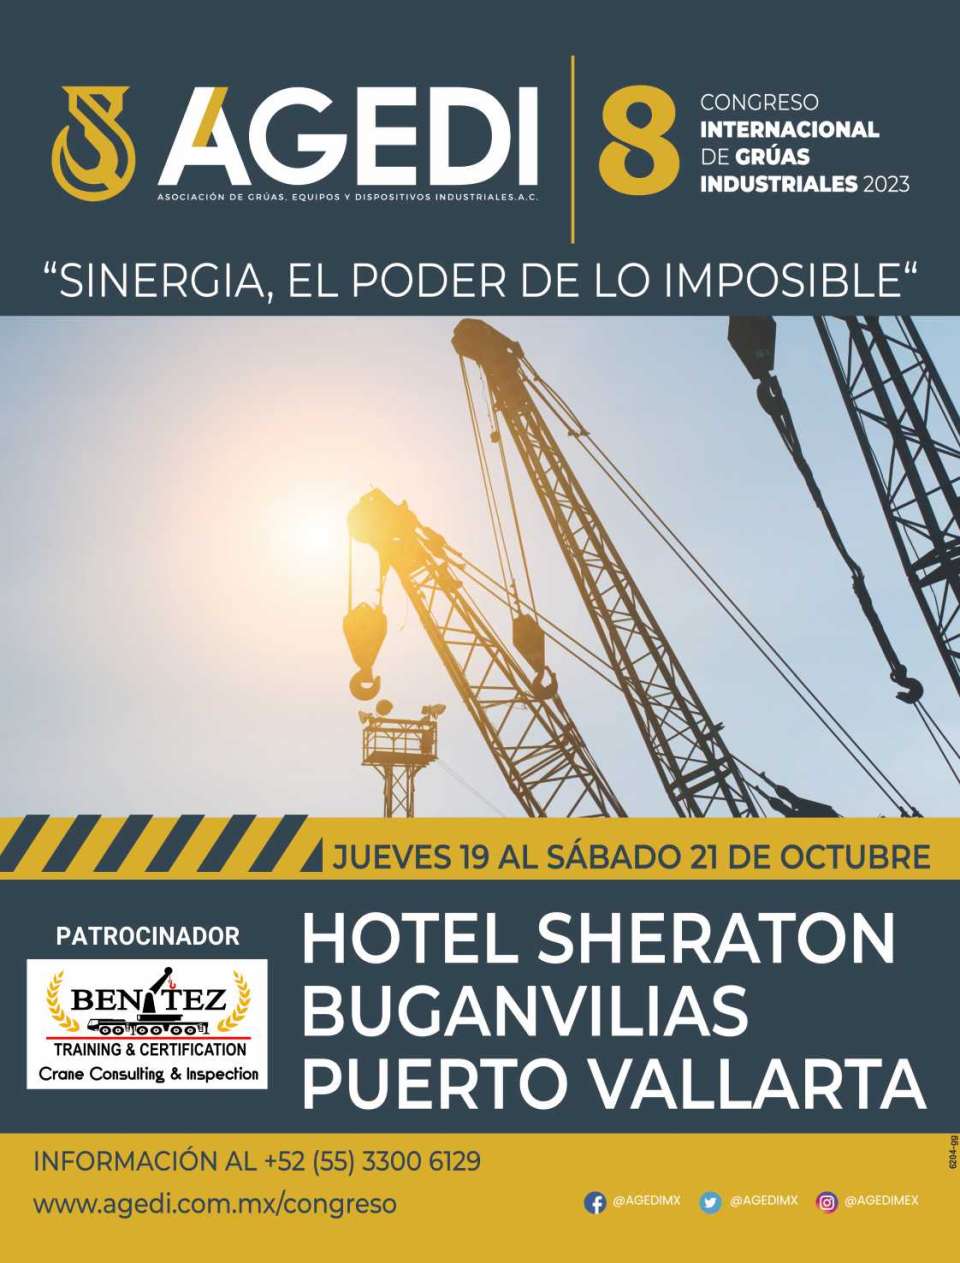 8th International Congress of Industrial Cranes AGEDI 2023. Puerto Vallarta, from October 19 to 21, 2023.